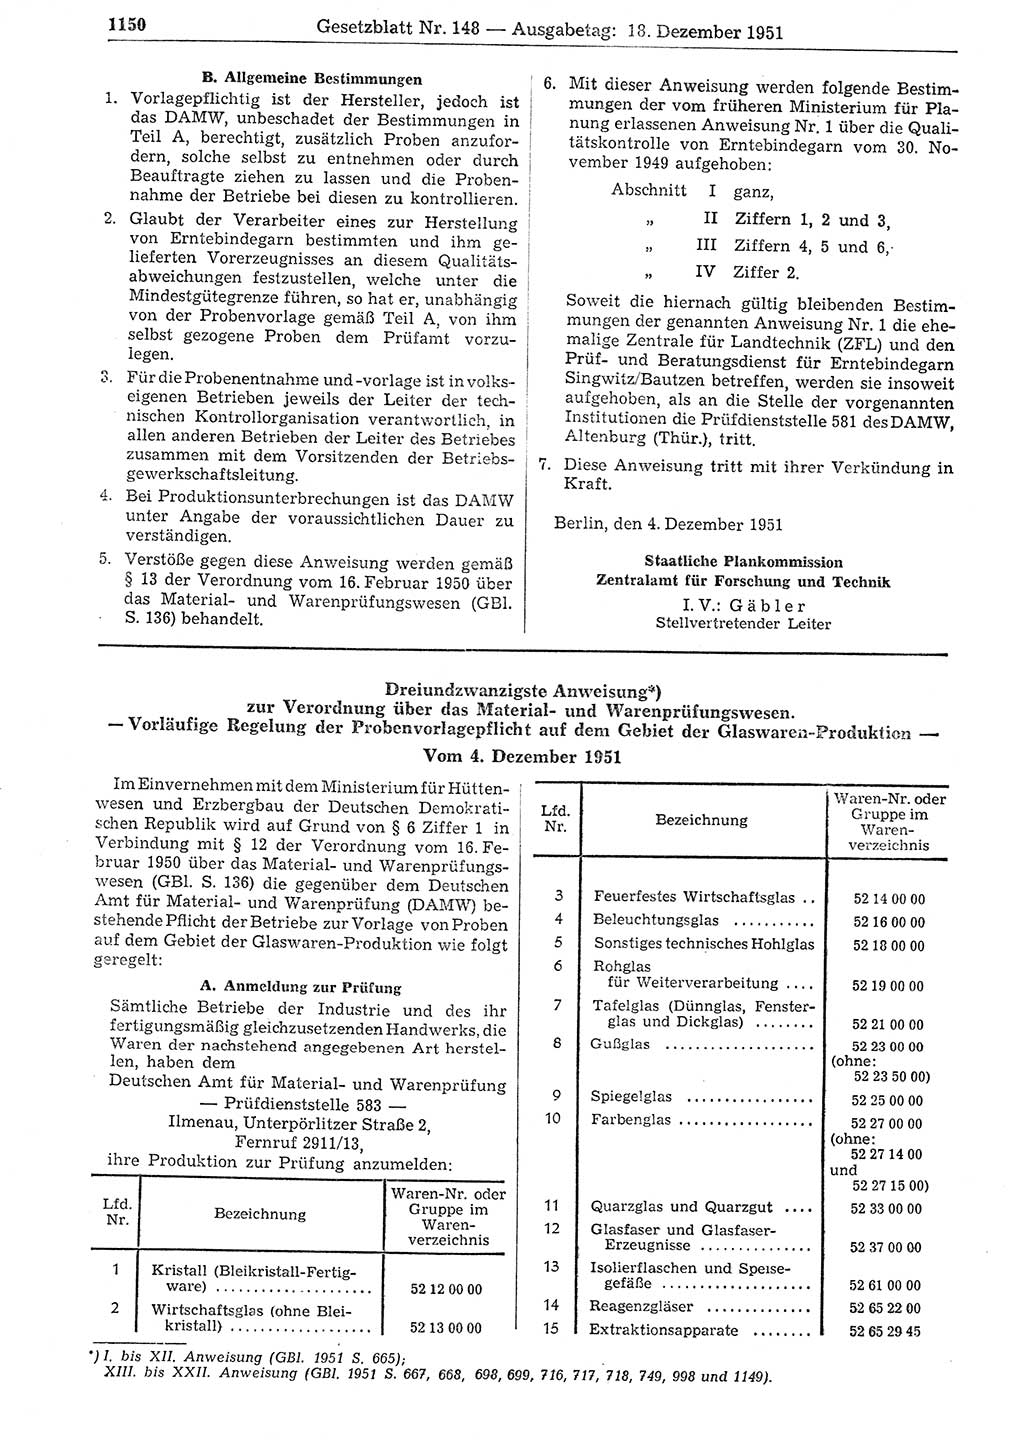 Gesetzblatt (GBl.) der Deutschen Demokratischen Republik (DDR) 1951, Seite 1150 (GBl. DDR 1951, S. 1150)